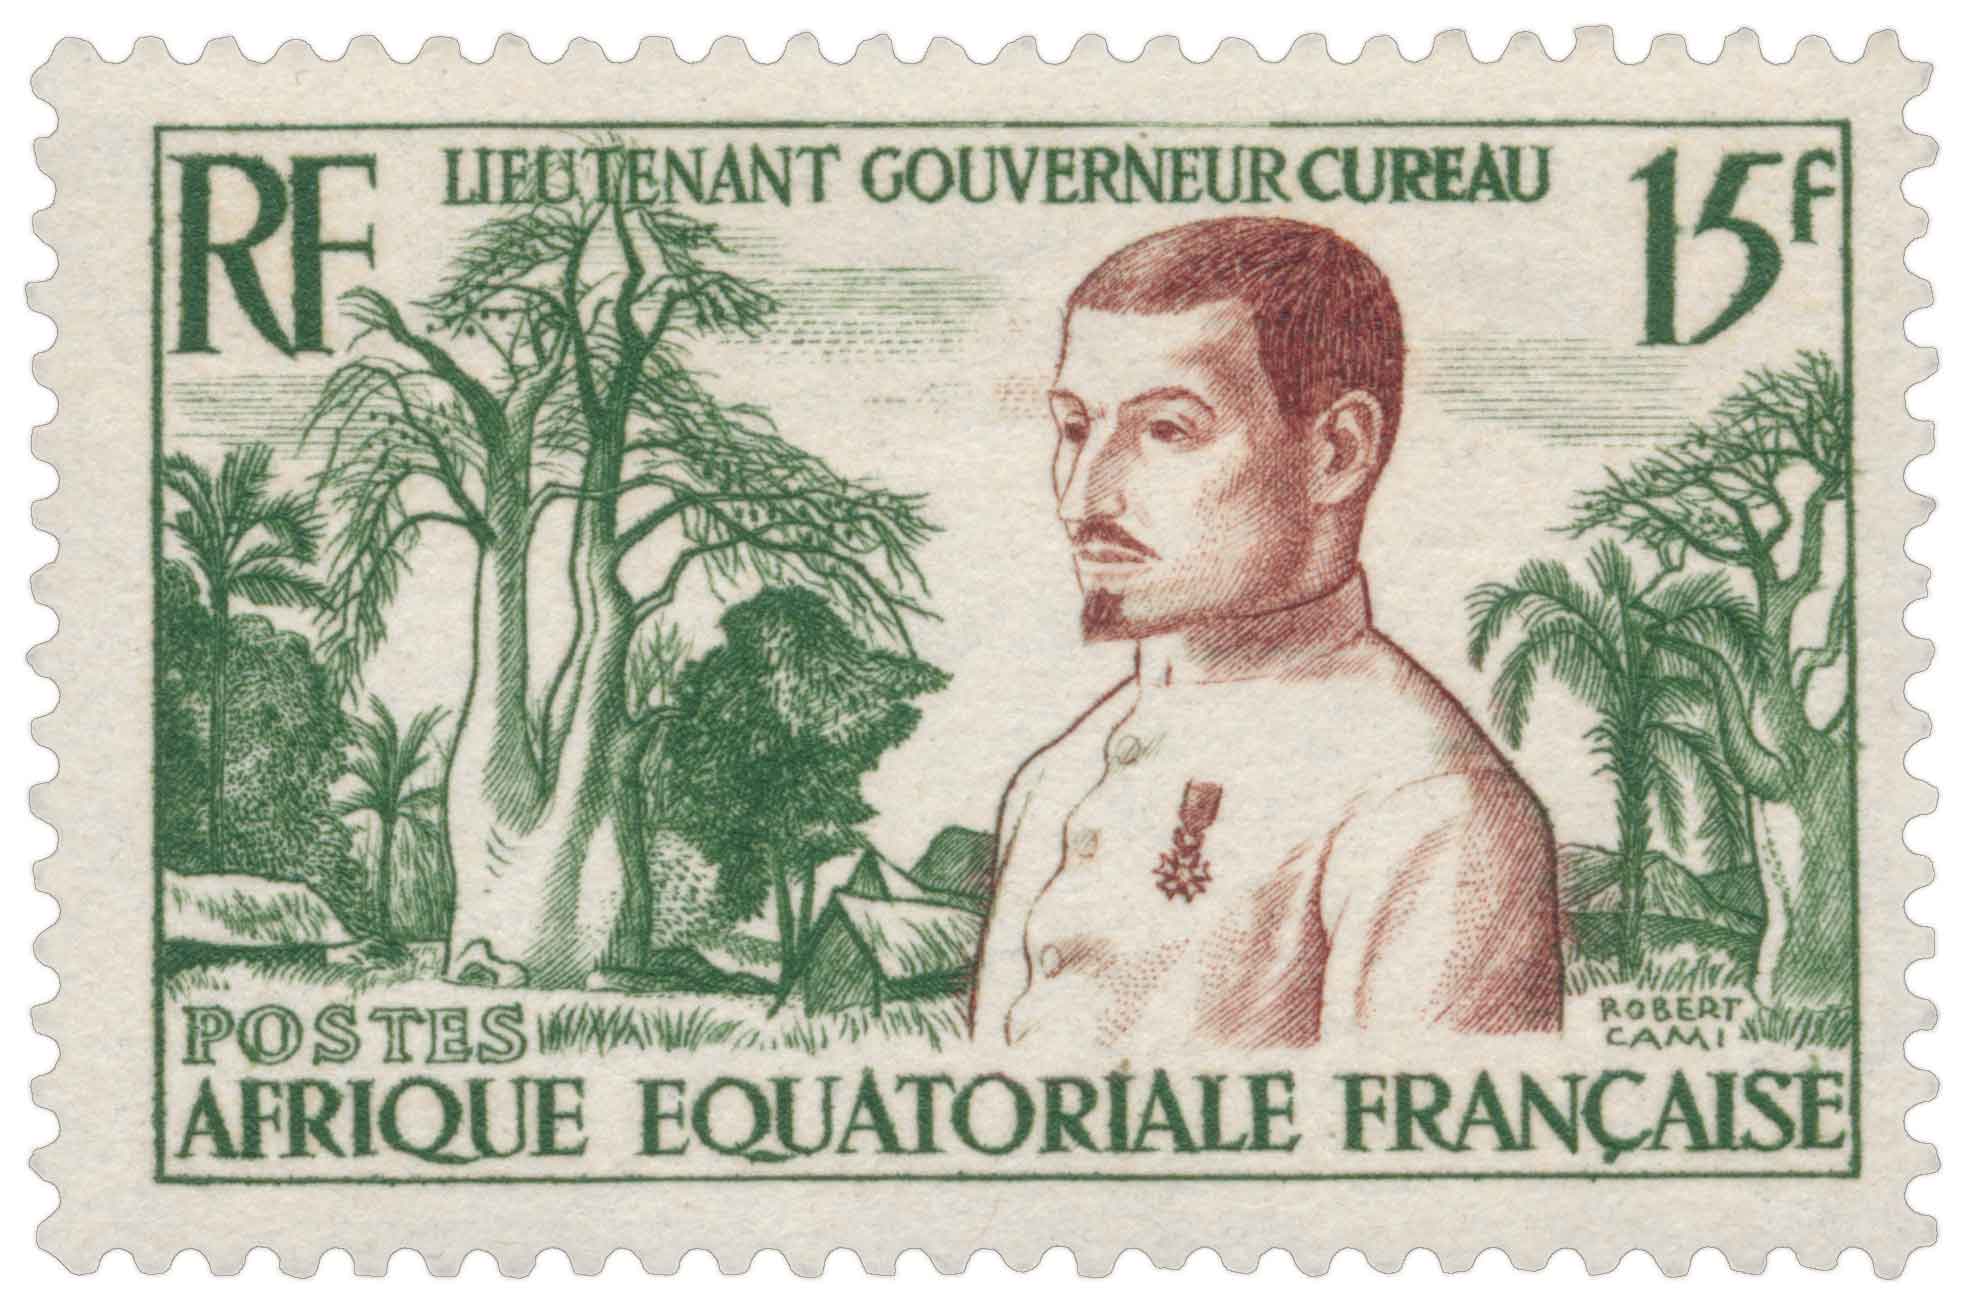 Lieutenant Gouverneur Cureau Équatoriale Française poste aérienne 